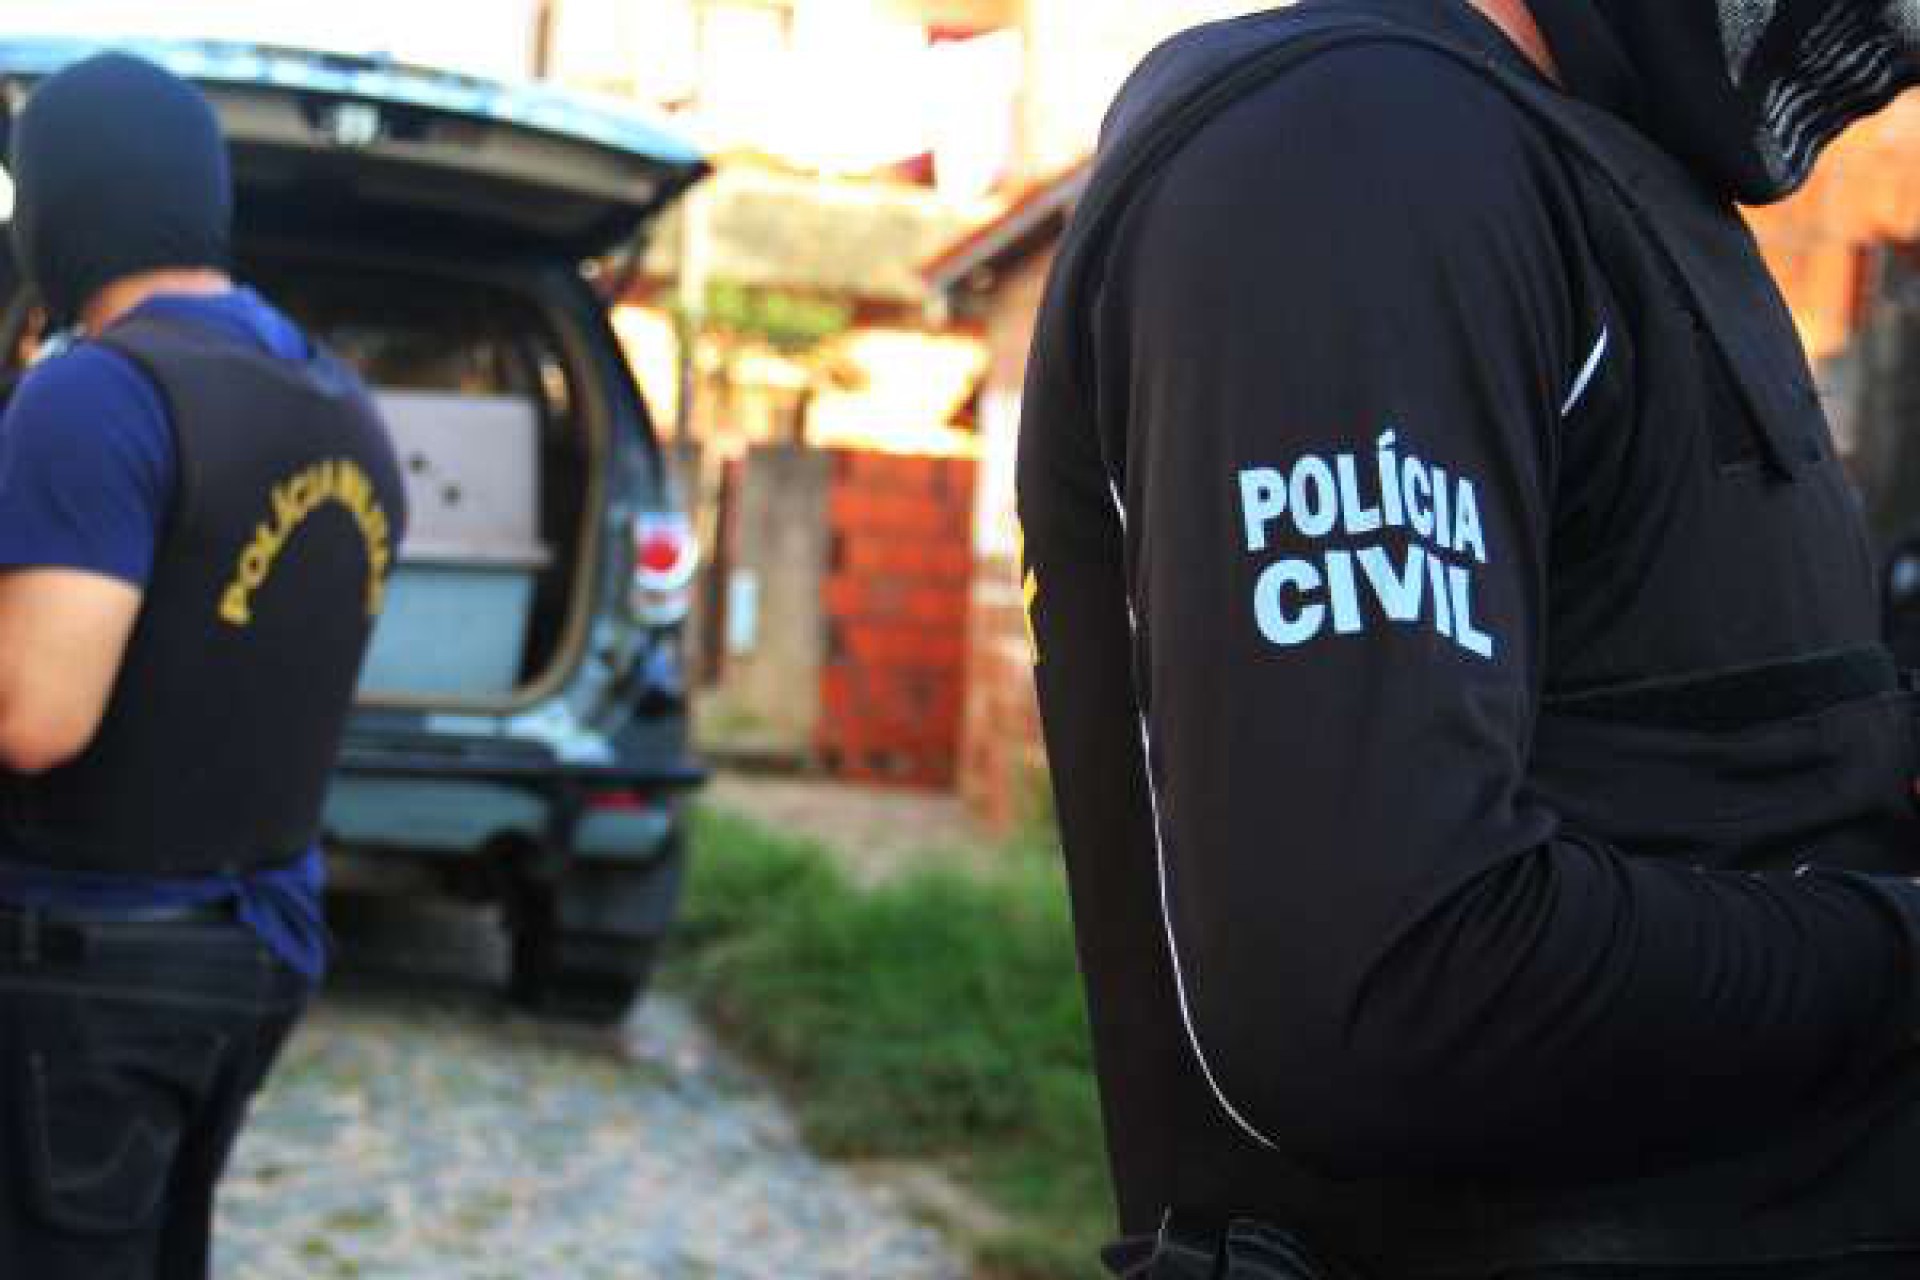 Imagem de apoio ilustrativo. Equipes da Polícia Civil do Ceará (PCCE), por meio do Departamento de Homicídios e Proteção à Pessoa (DHPP), apuram as circunstâncias do crime (Foto: Divulgação/Polícia Civil do Ceará)